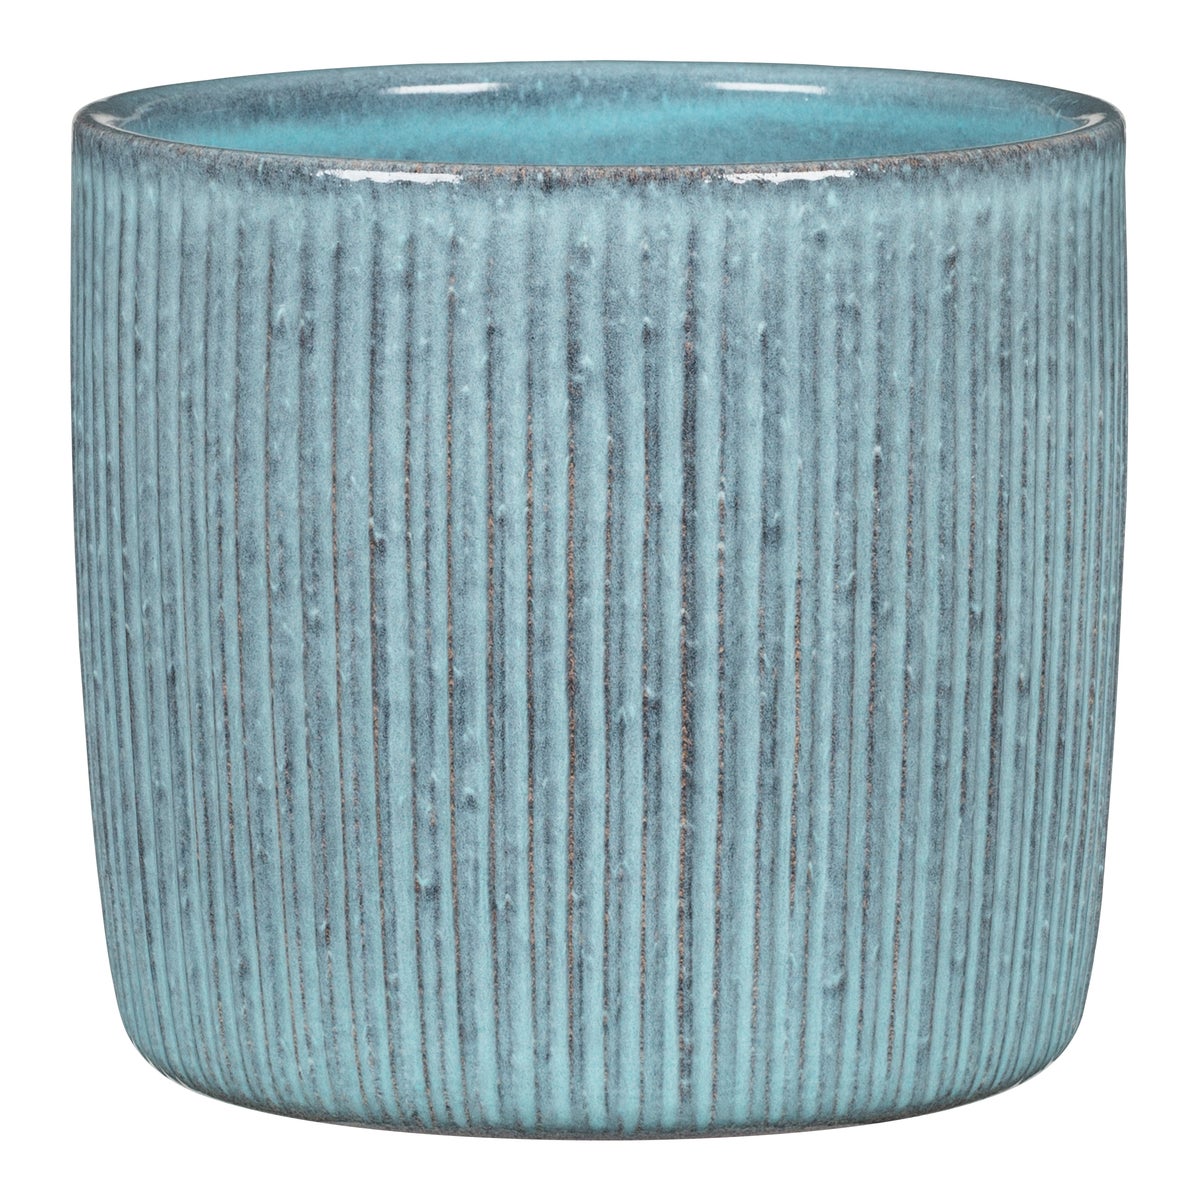 Scheurich Solido Linea, Blumentopf aus Keramik,  Farbe: Lagoon, 21,2 cm Durchmesser, 19,3 cm hoch, 5,6 l Vol.